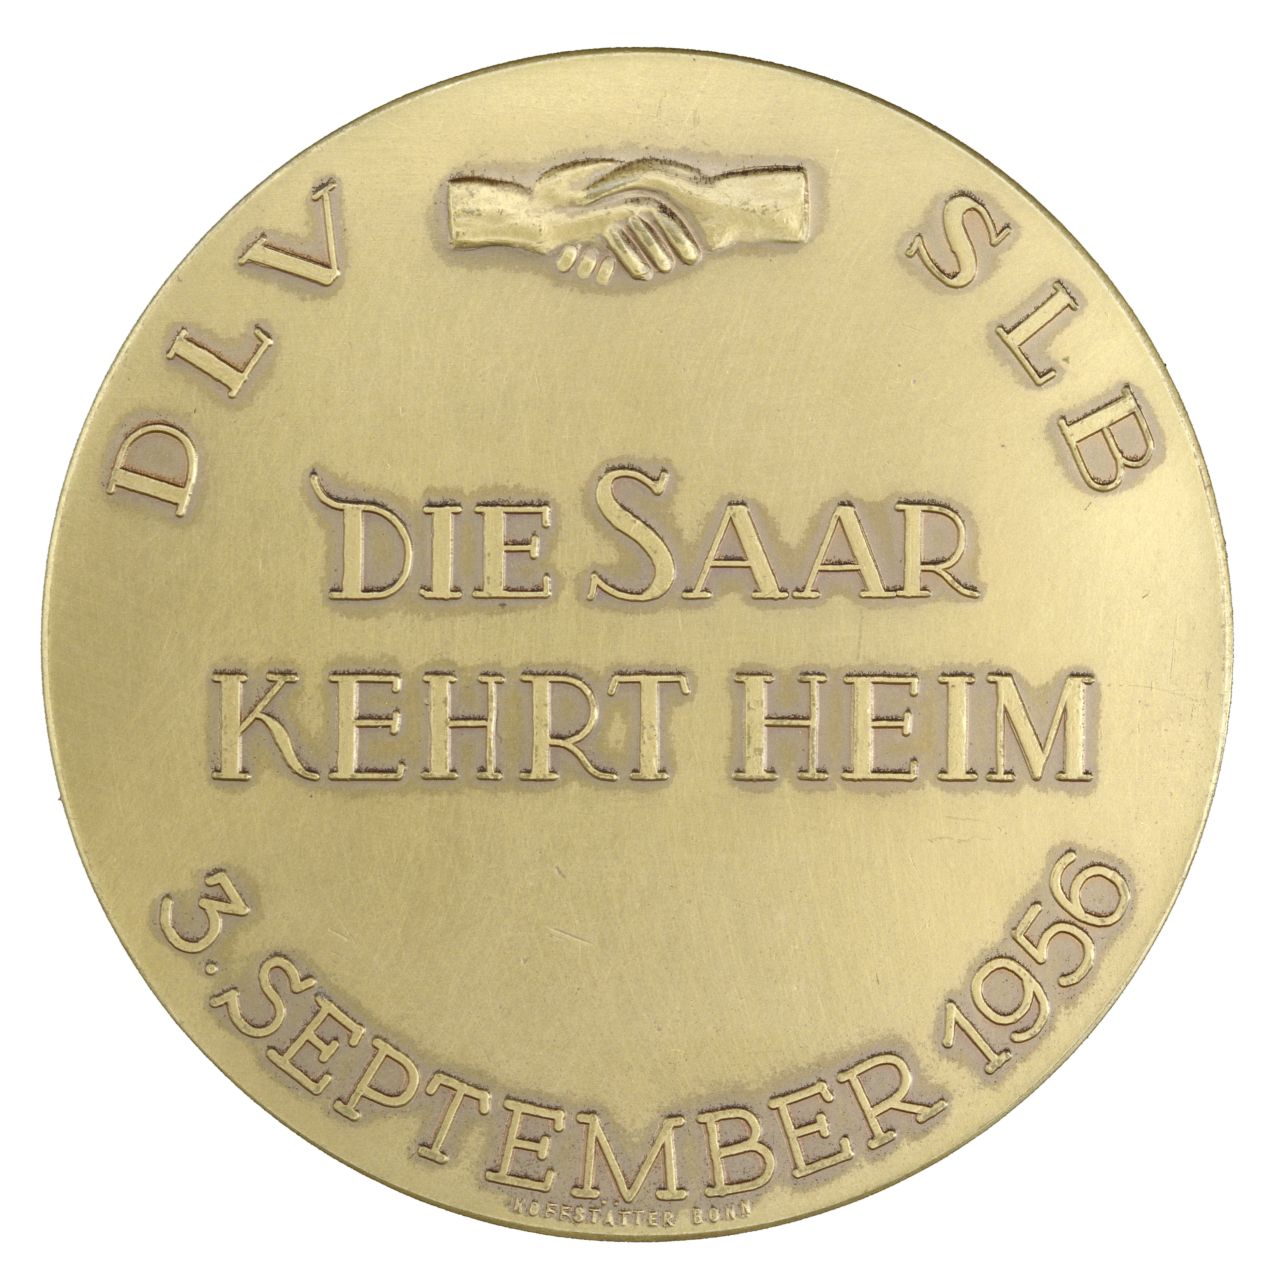 Auf der messingfarbenen Medaillen-Vorderseite erhabene Umschrift 'DLV SLB 3. September 1956'. Zwischen DLV und SLB zwei schüttelnde Hände. In der Mitte erhaben in Großbuchstaben 'Die Saar kehrt heim'.